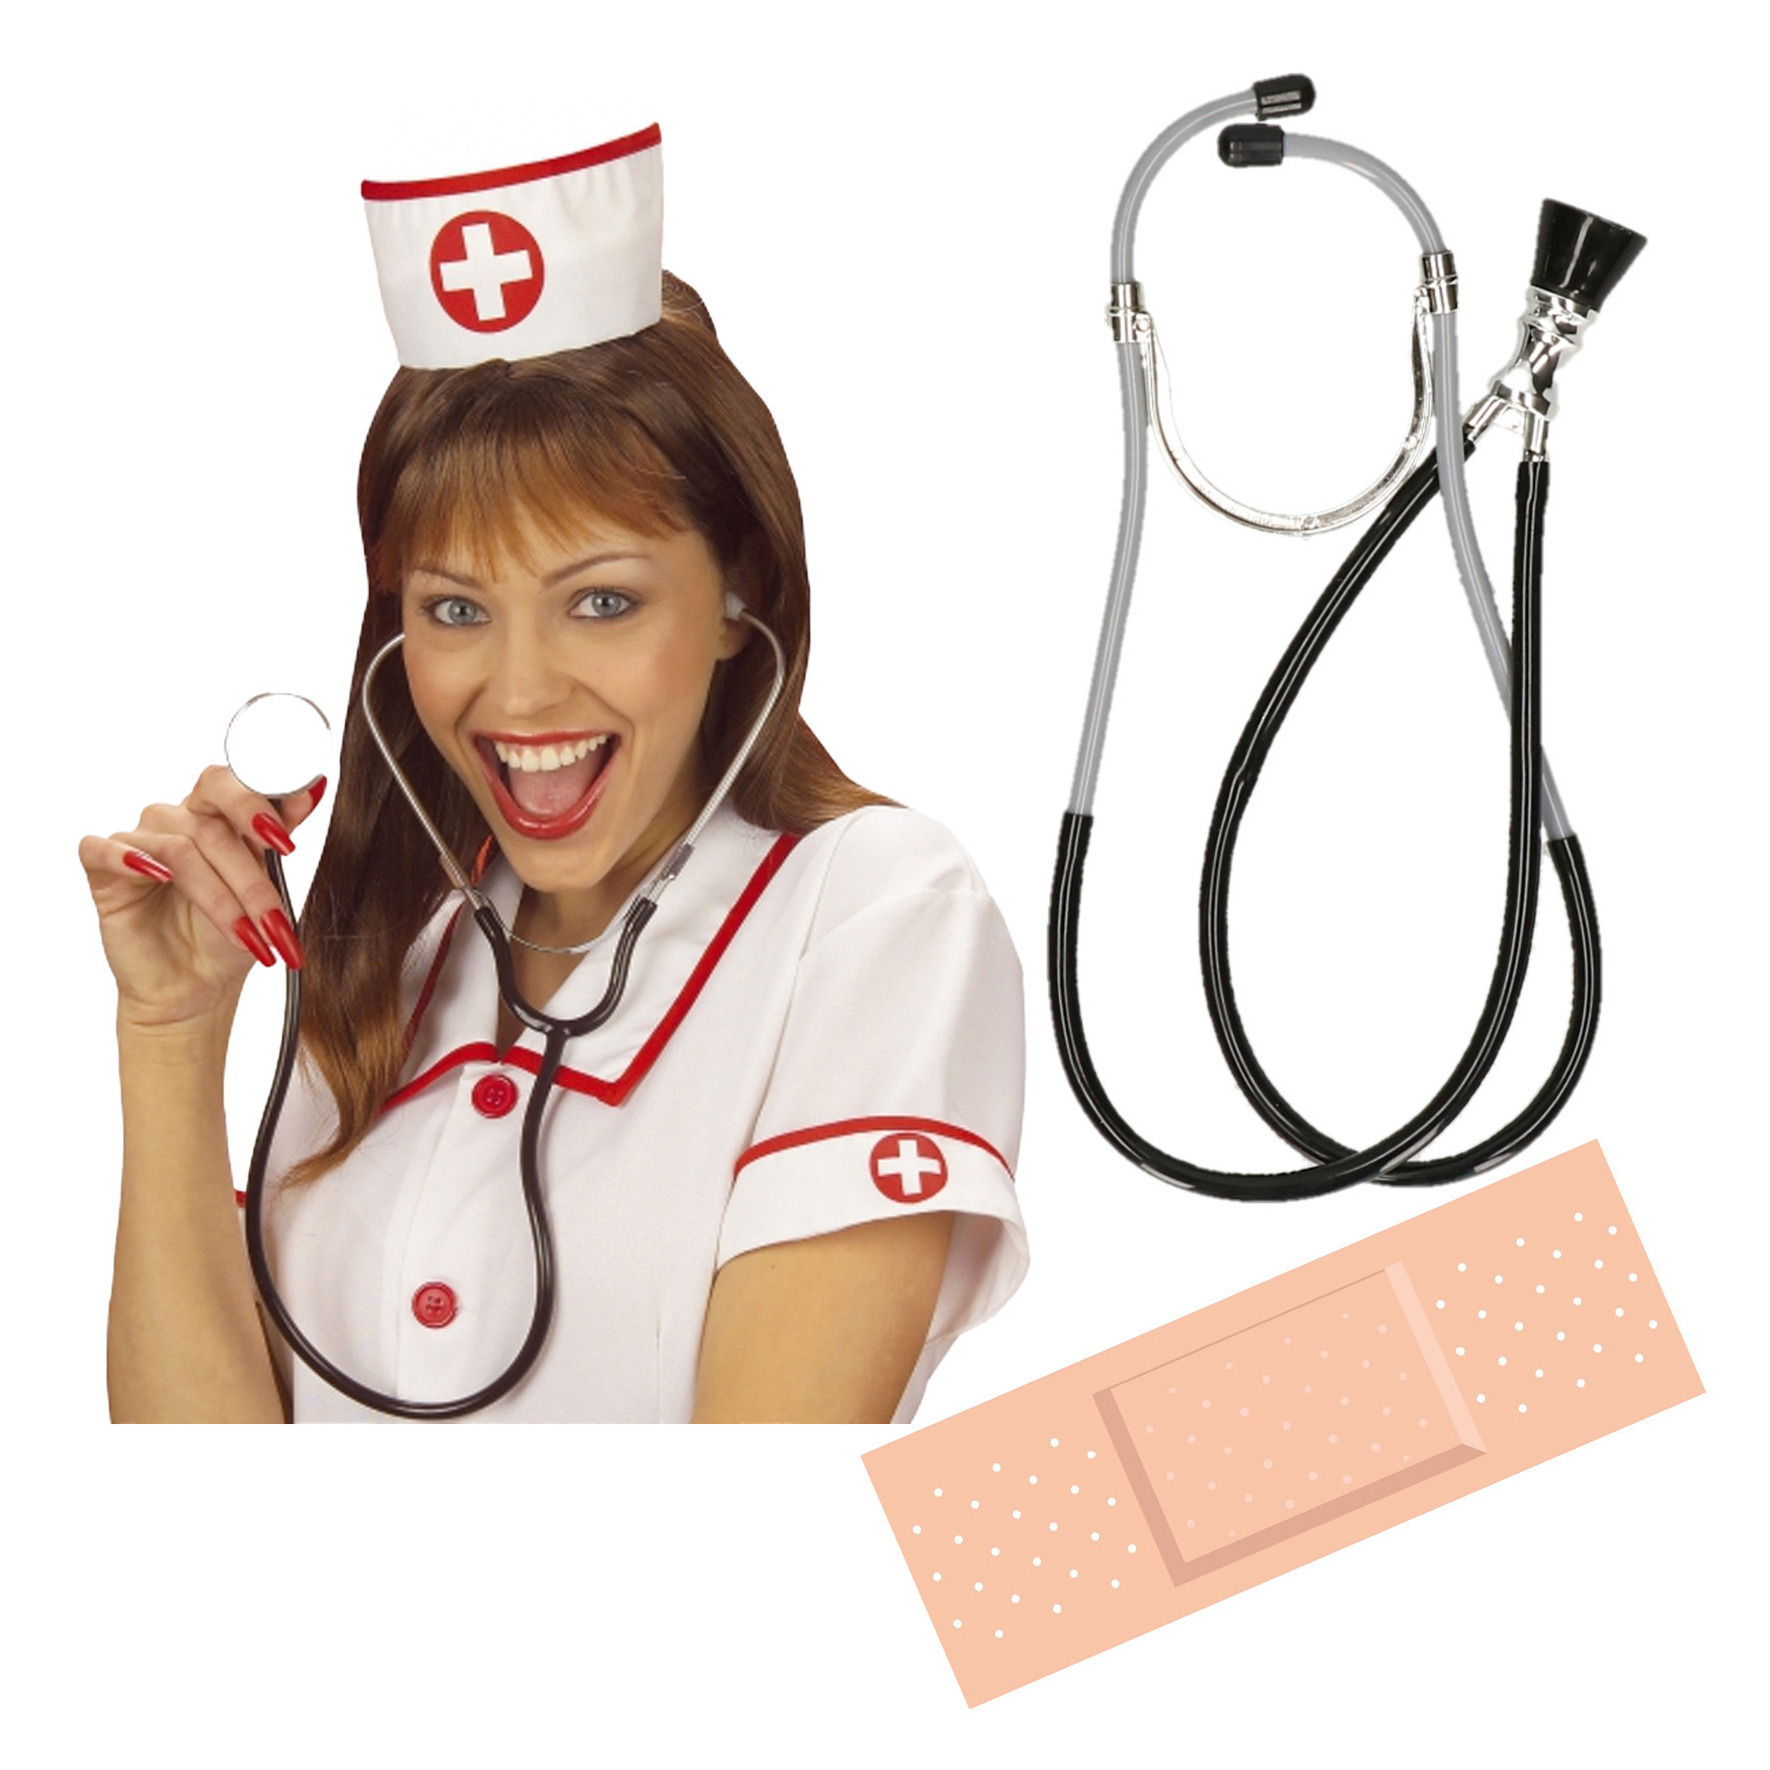 Verpleegster-zuster ziekenhuis verkleed accessoires 3-delig stethoscoop-fun pleisters-kapje